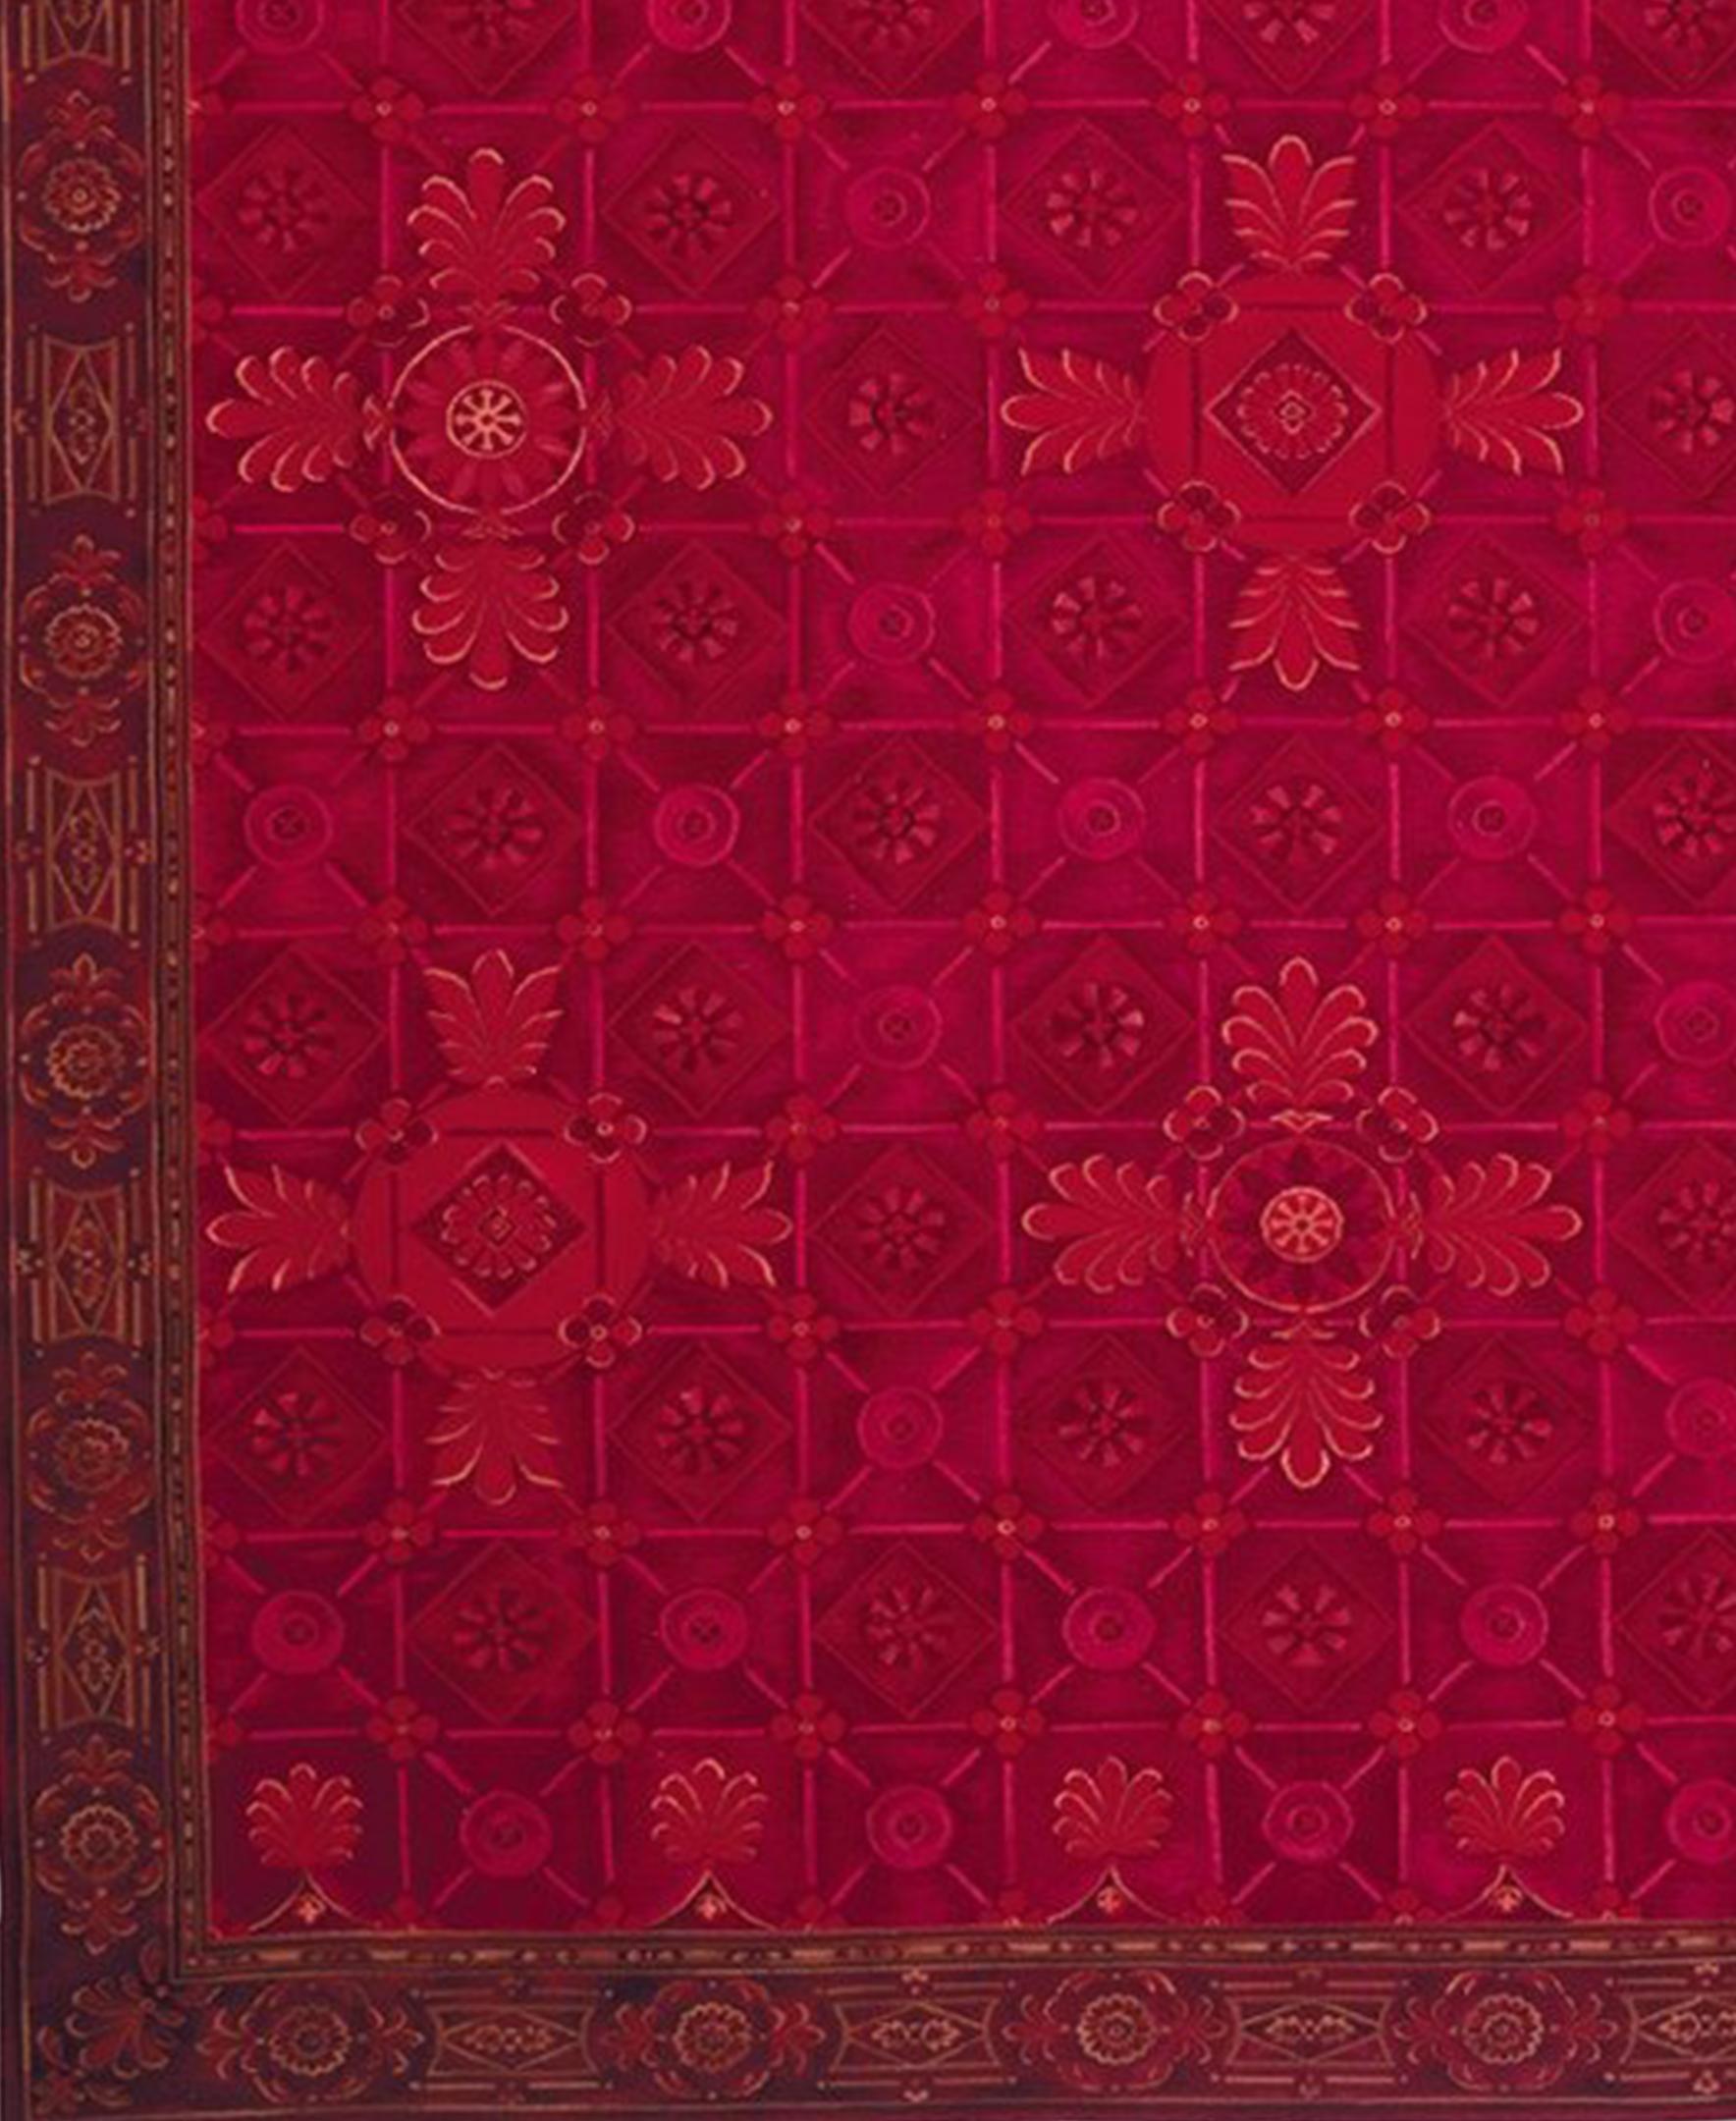 Le tapis Pamplona s'inspire d'une peinture originale d'Asmara réalisée par l'artiste russe Ludmila Slavinsky, qui a imprégné le tapis de l'atmosphère dramatique de la ville espagnole. Mille nuances de rouge, du rubis au cabernet, sont complétées par